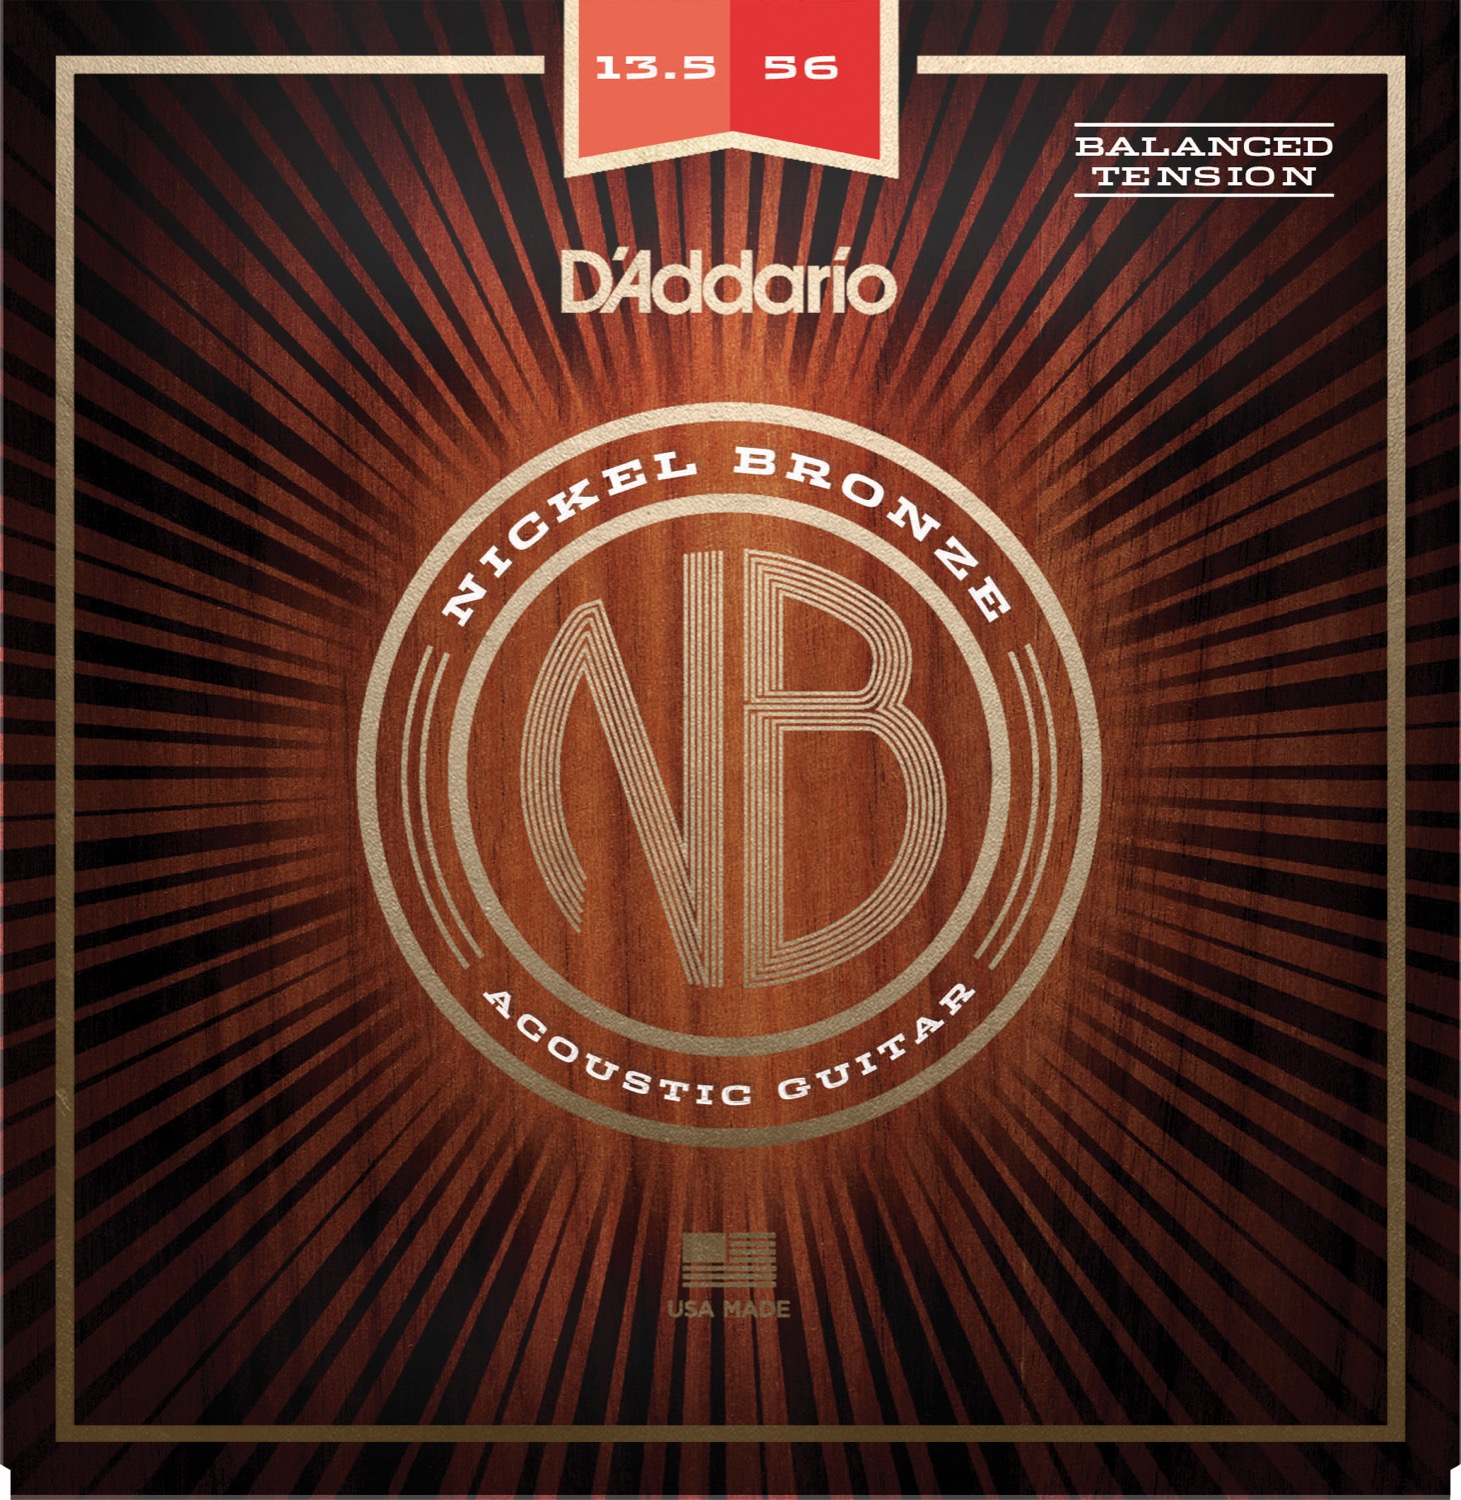 Se D'Addario NB13556BT Nickel Bronze Western Set 13.5-56 (Medium, Balanced Tension) hos Allround Musik